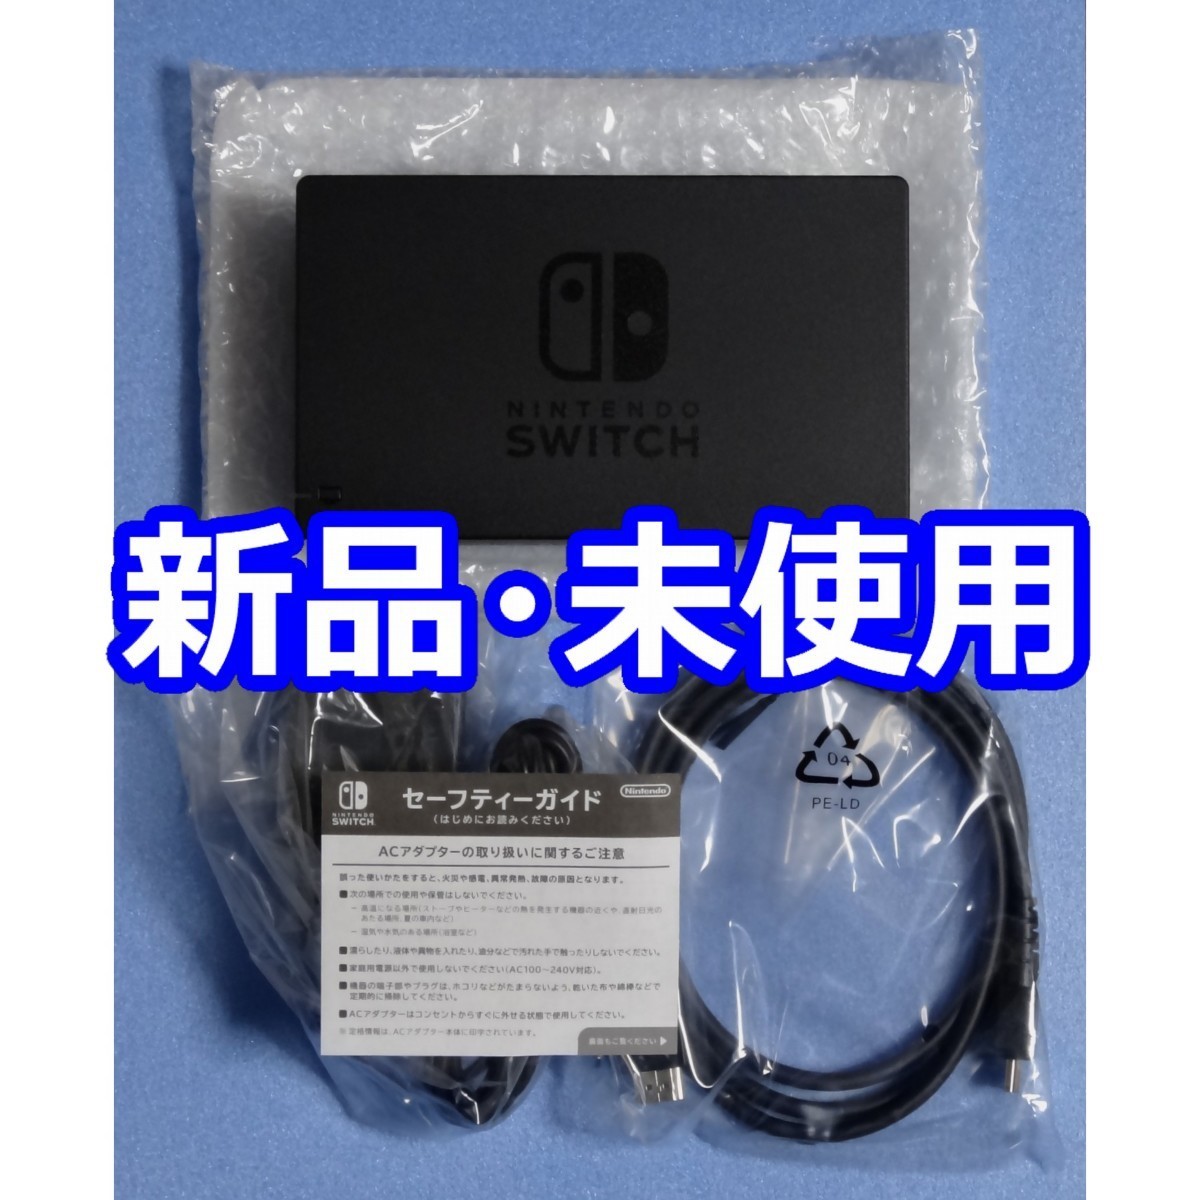 新品 未使用 Nintendo Switch 純正付属品 ドック ACアダプター HDMIケーブル 純正品